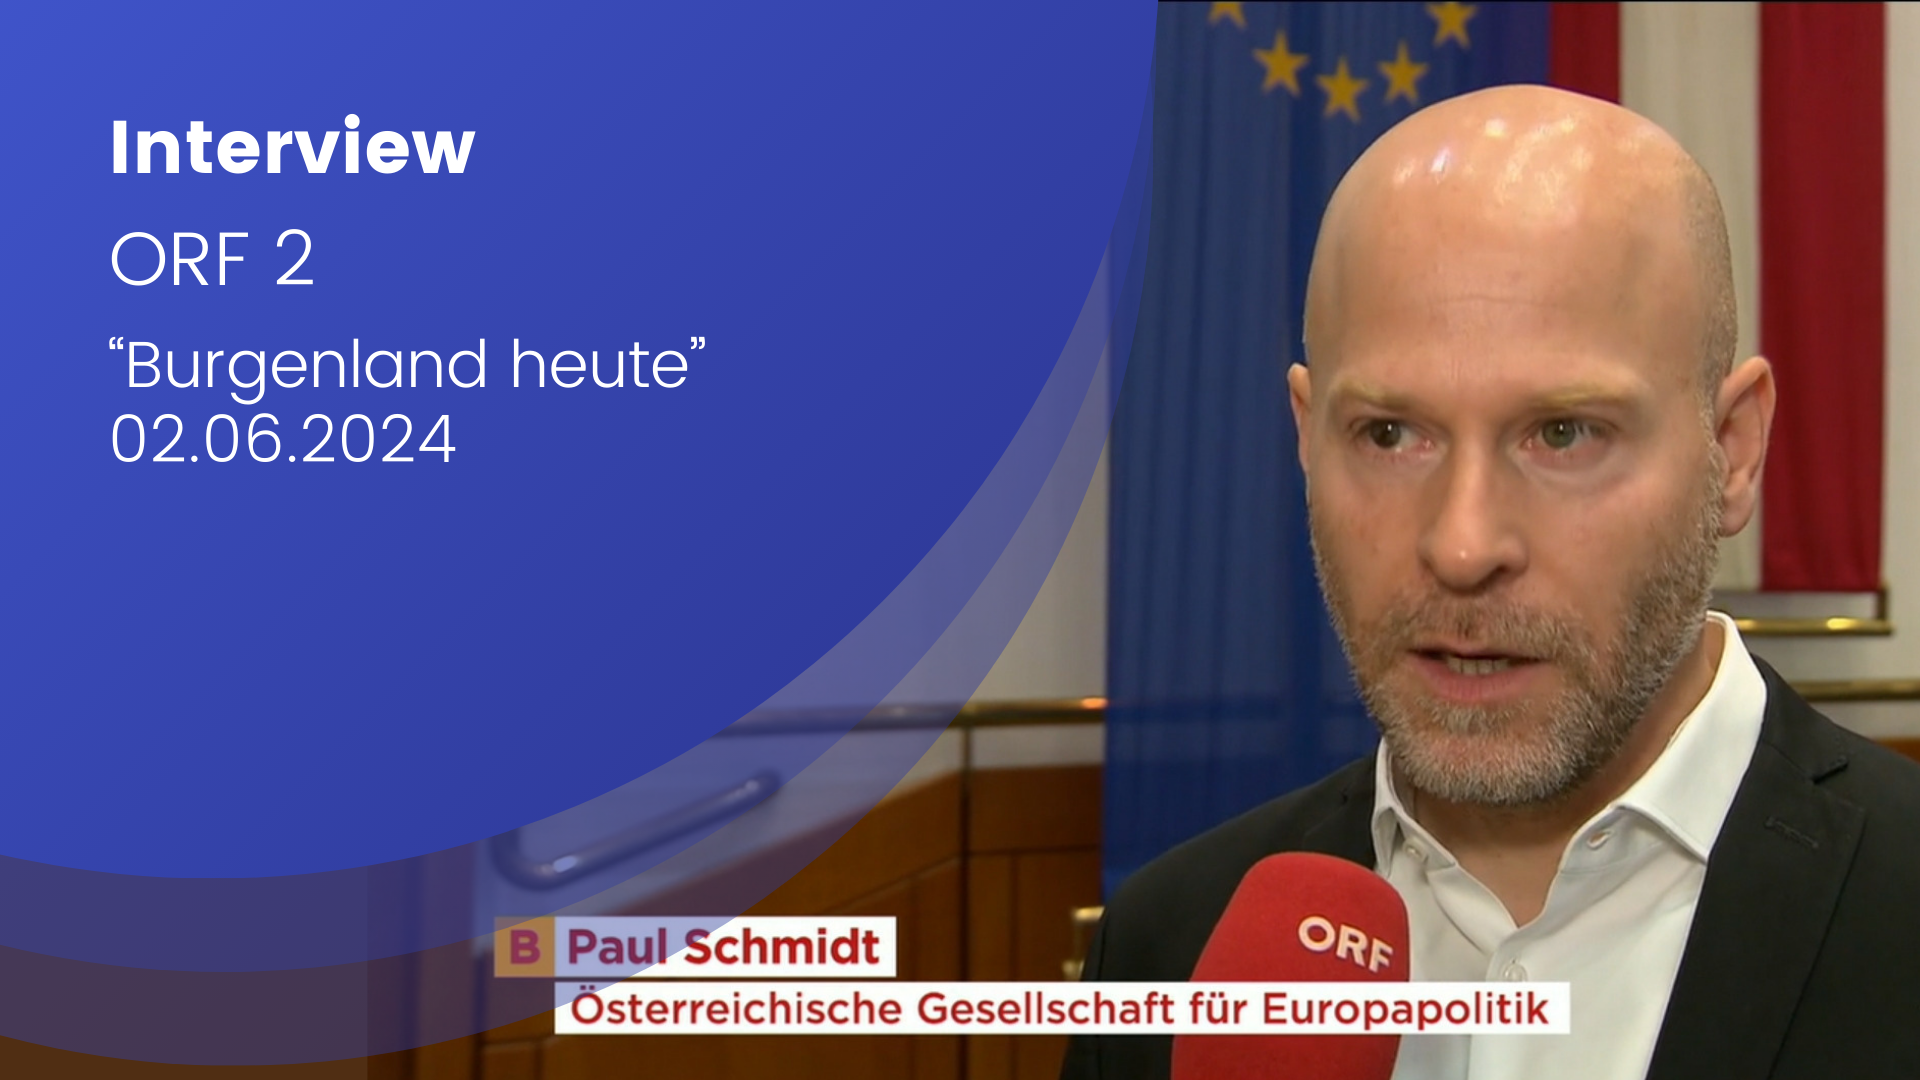 Paul Schmidt wird in einem Interview befragt. Im Hintergrund ist die EU Flagge und die Flagge Österreichs.